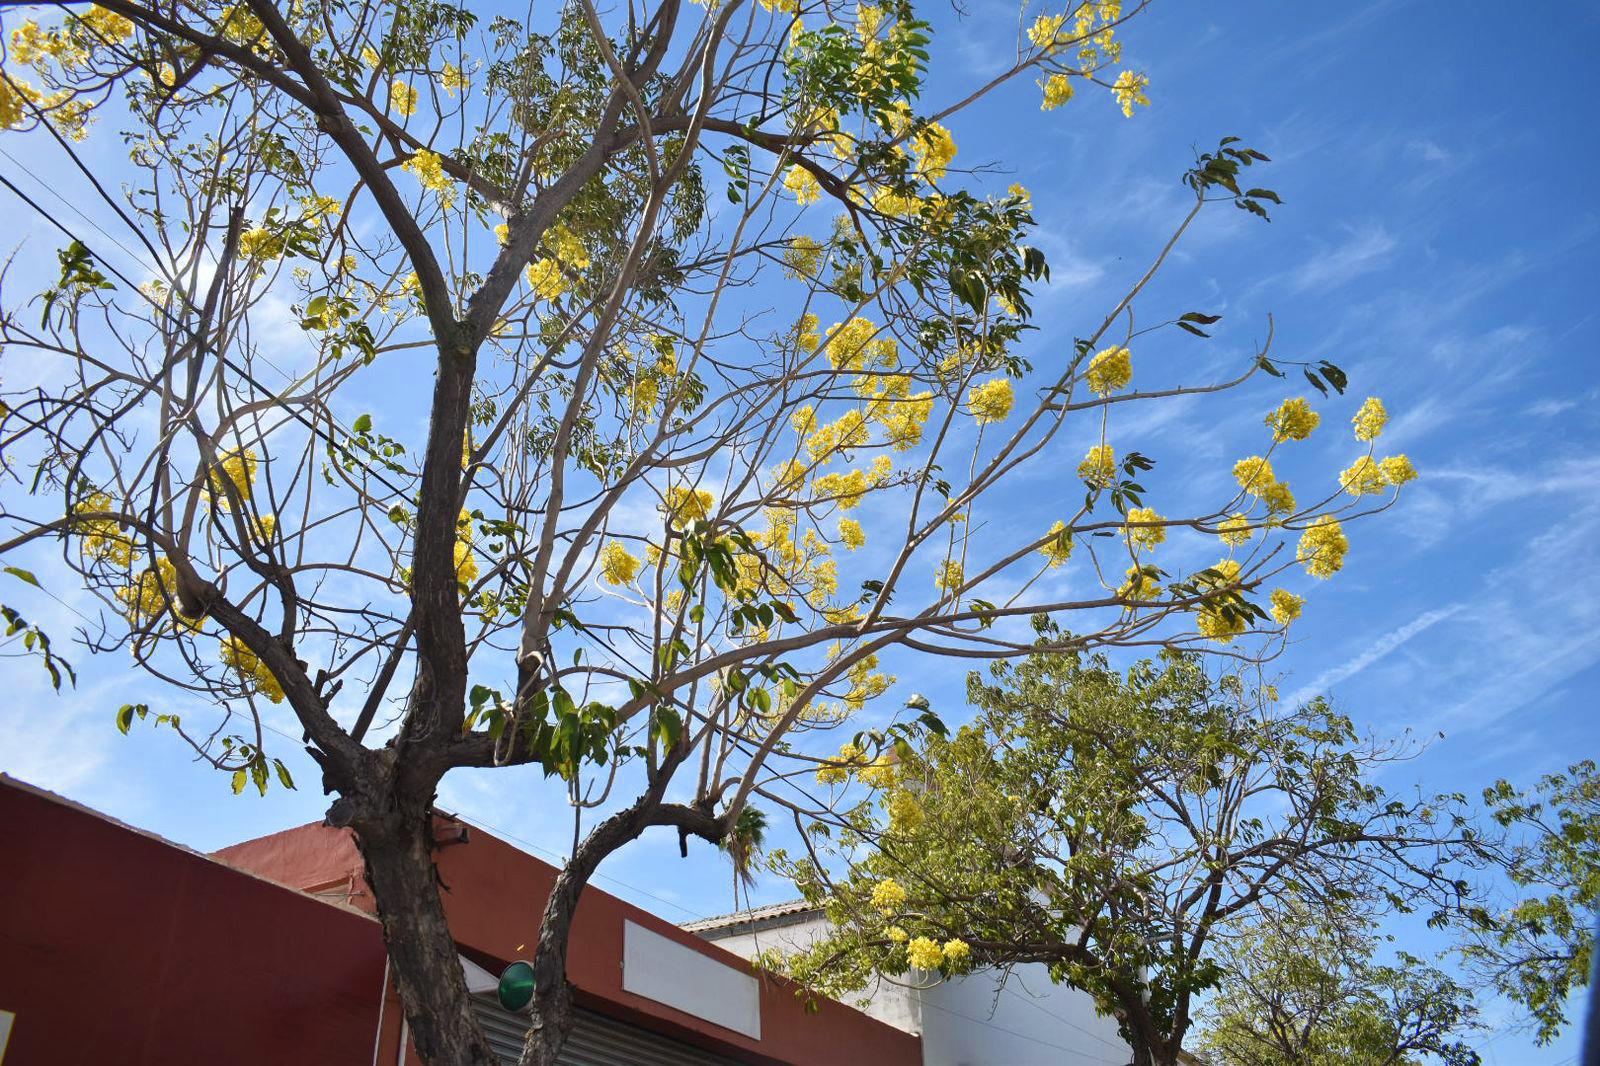 $!FOTOS | La amapa florece y adorna las calles de Culiacán